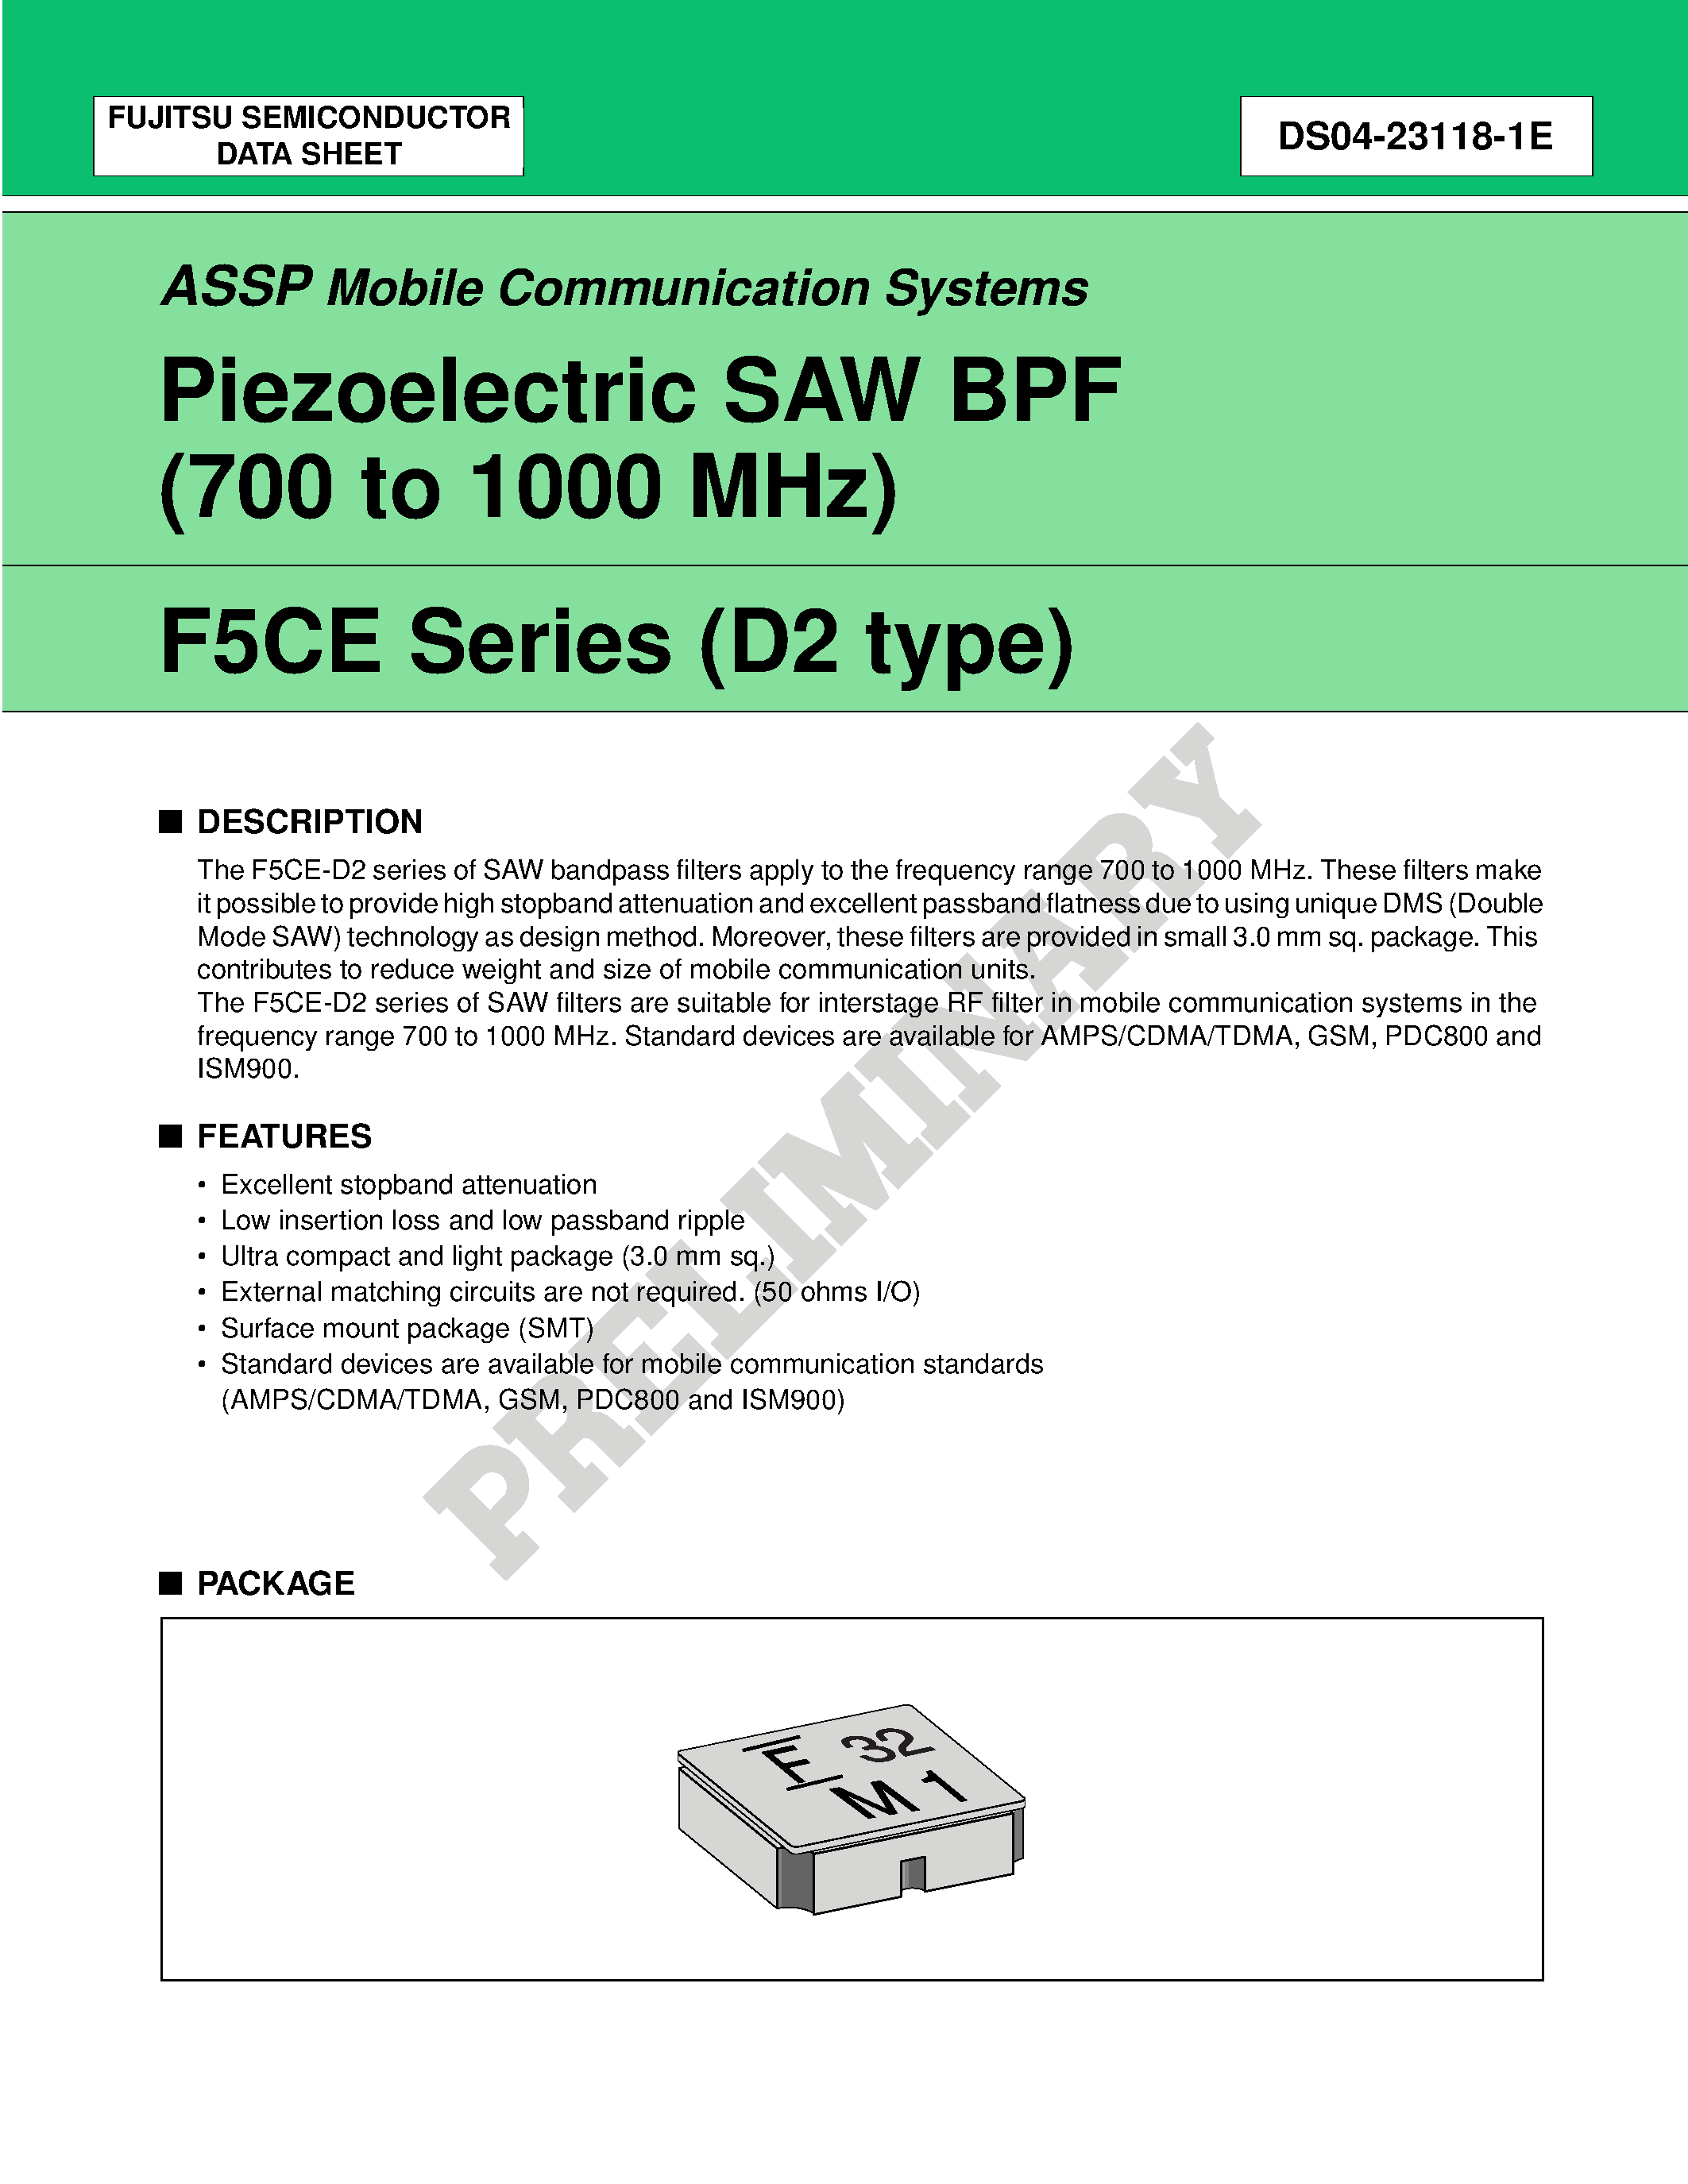 Datasheet FAR-F5CE-906M00-K219-U - Piezoelectric SAW BPF (700 to 1700 MHz) page 1